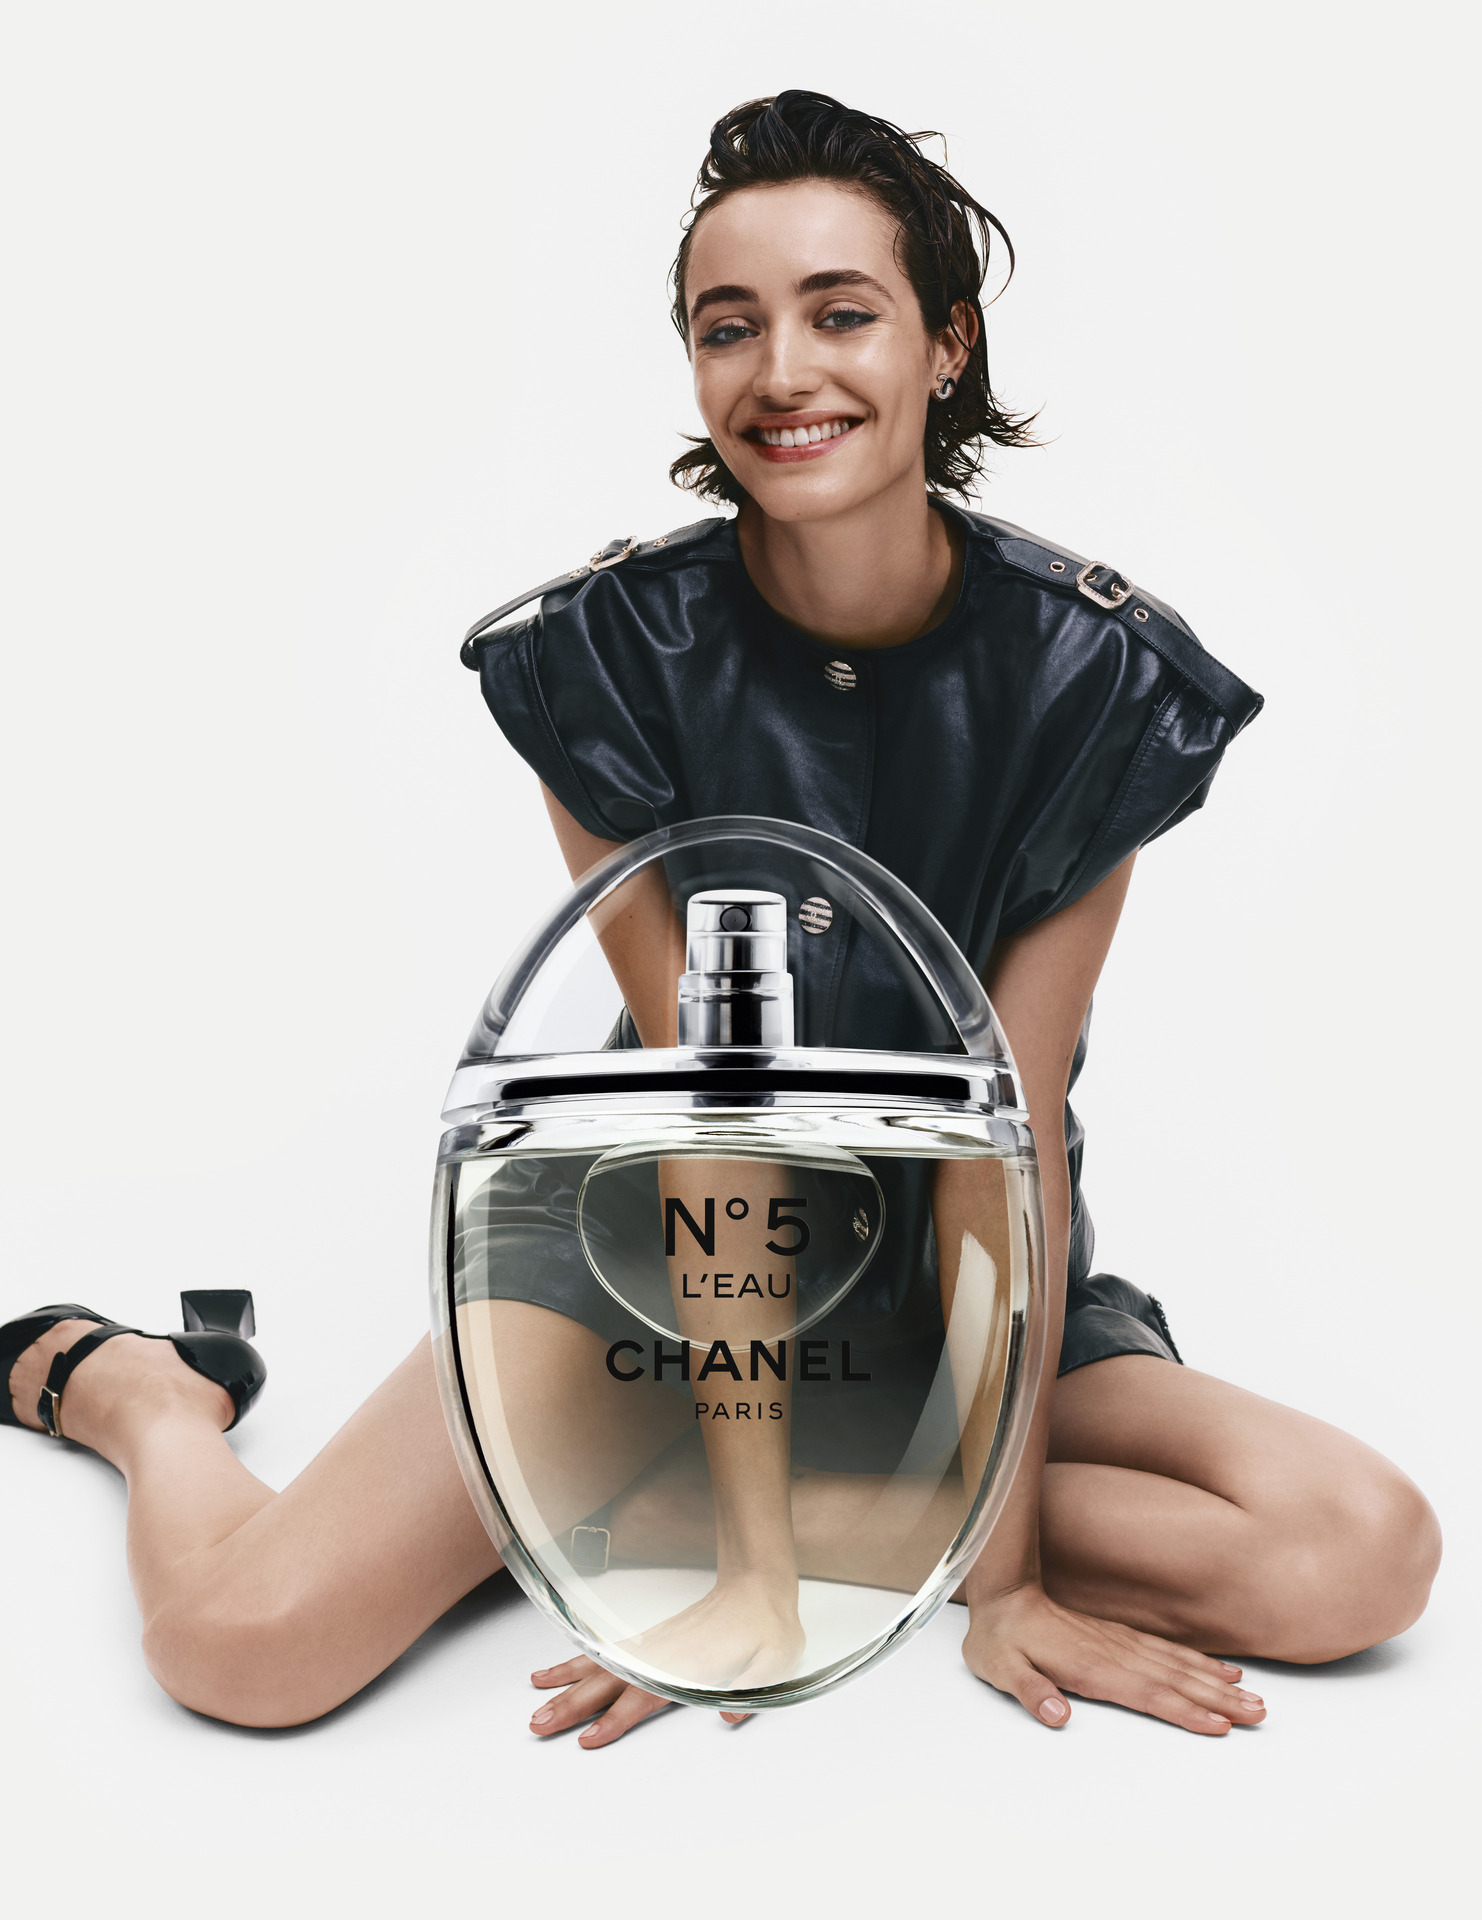 Po prvi put u povijesti kultni CHANEL parfem ima novi dizajn bočice